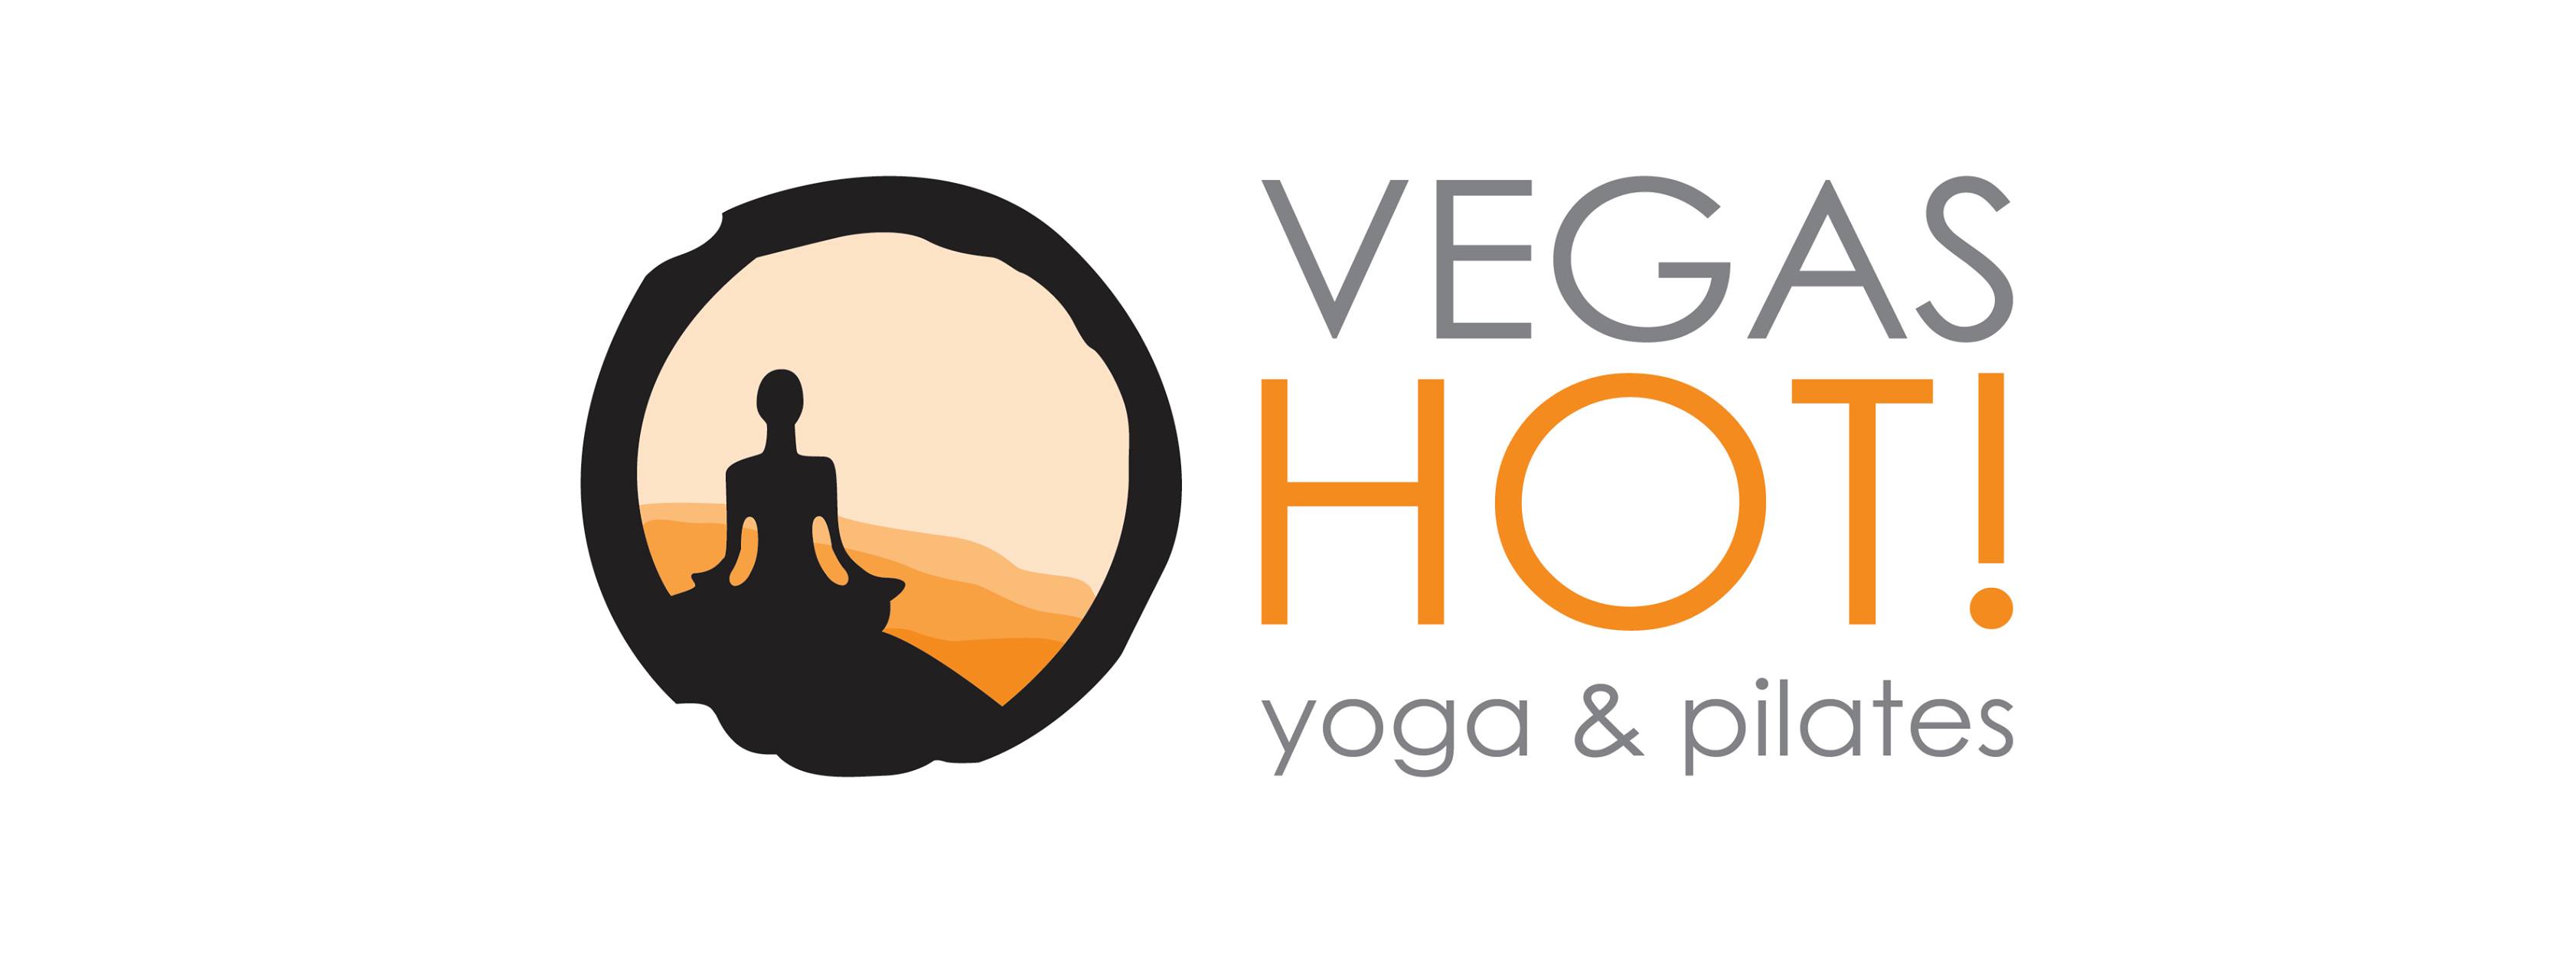 Vegas Hot! Yoga And Pilates Studio United States